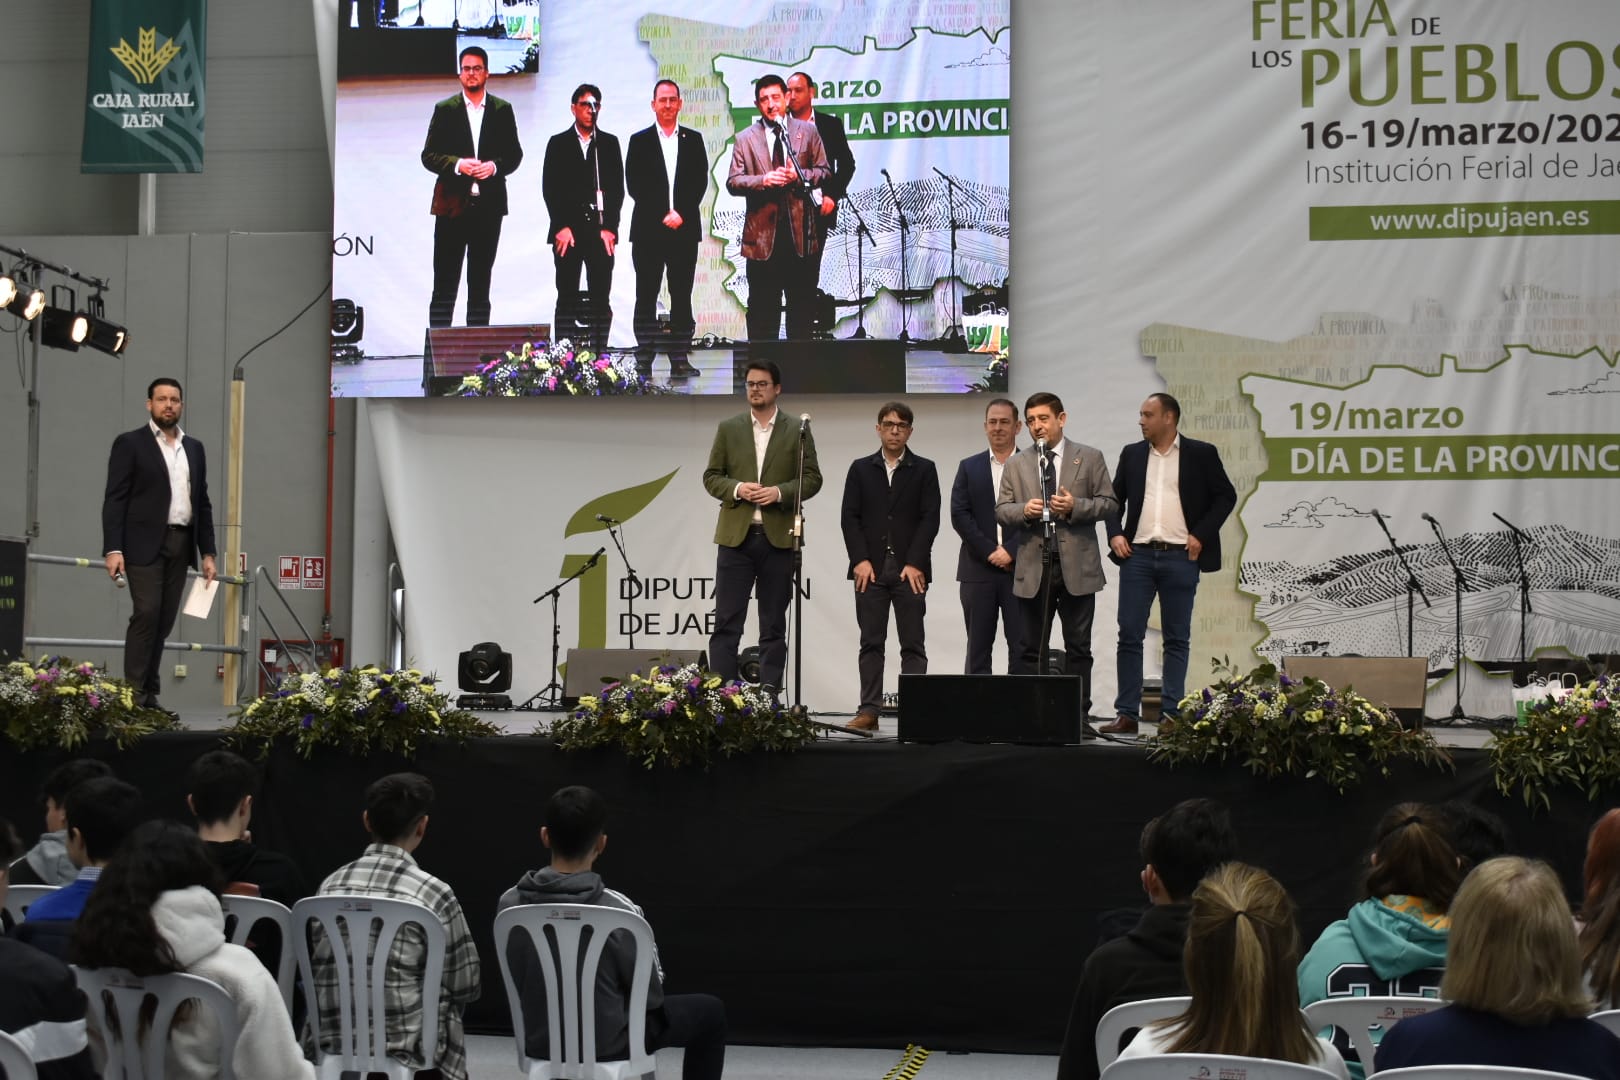 El escenario principal de la Feria de los Pueblos ha acogido la presentación de estos vídeos promocionales. JPG de 207 KB | Diputación de Jaén | Ampliar imagen